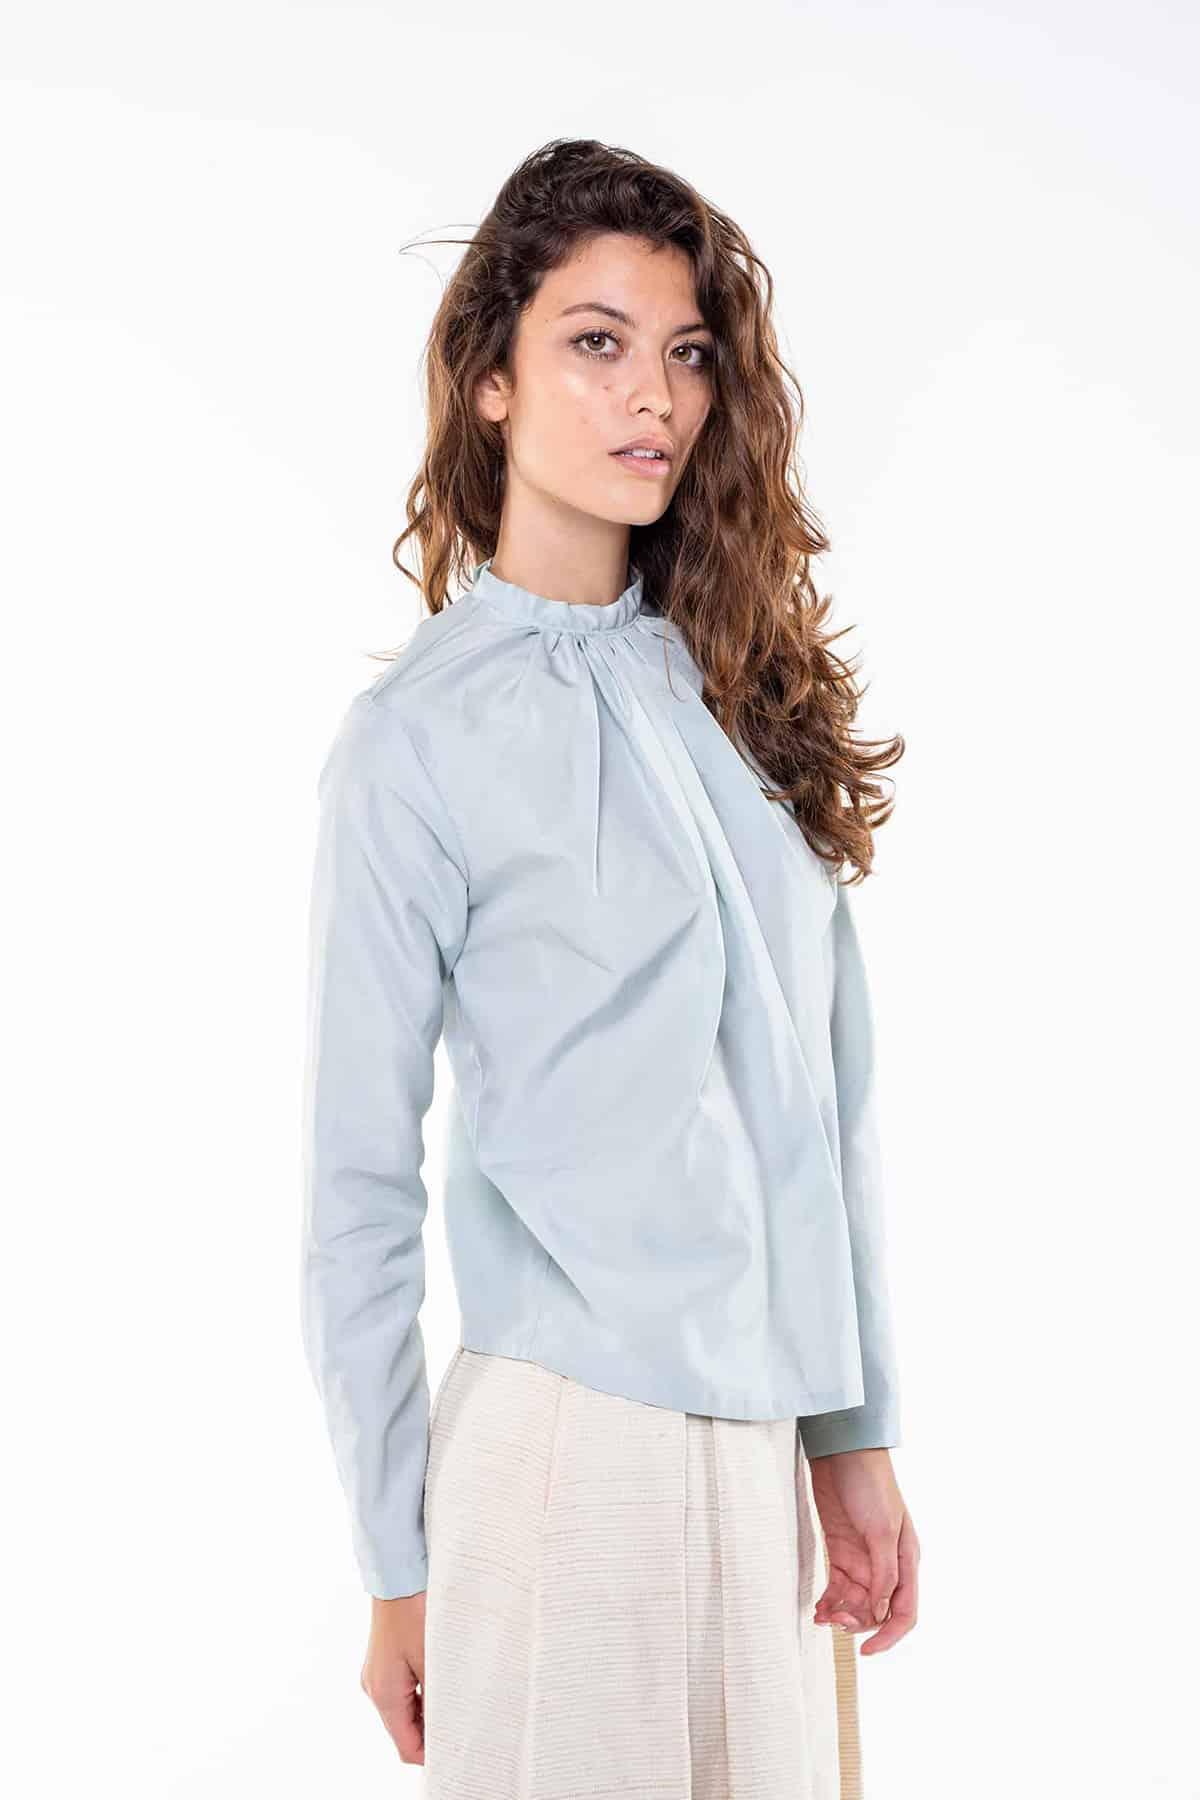 Camicia SVEVA Cupro grs ecologico Cotone Biologico Moda Sostenibile Artigianale brand Malia Lab camicia sartoriale blusa su misura vista laterale